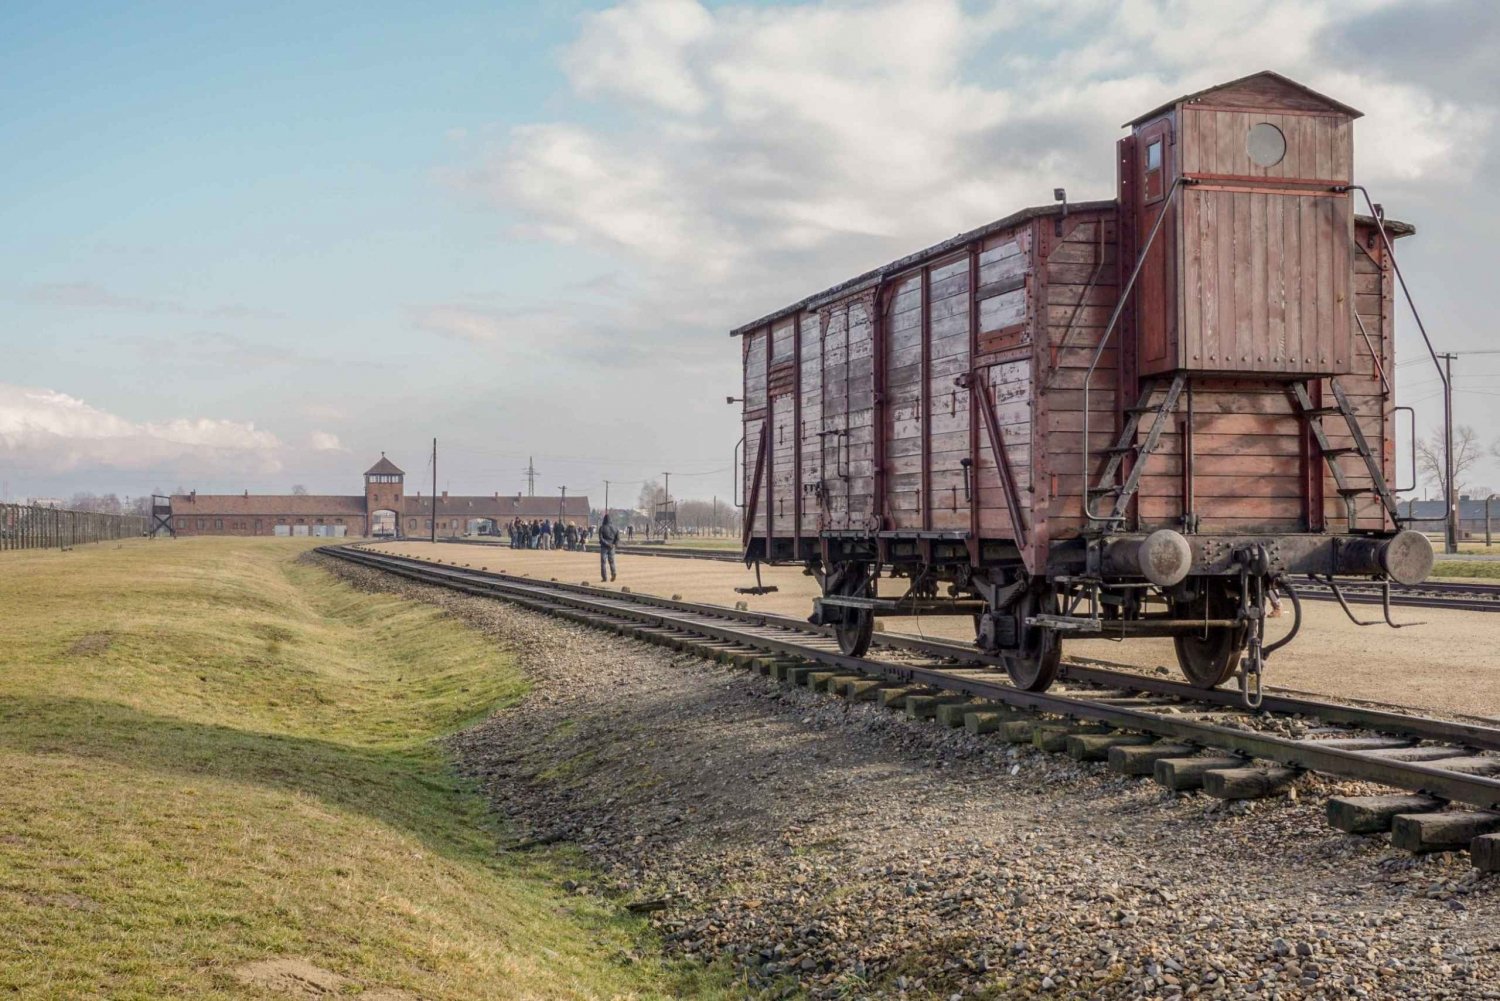 Krakovasta: Opastettu kokopäiväretki Auschwitz-Birkenauhun